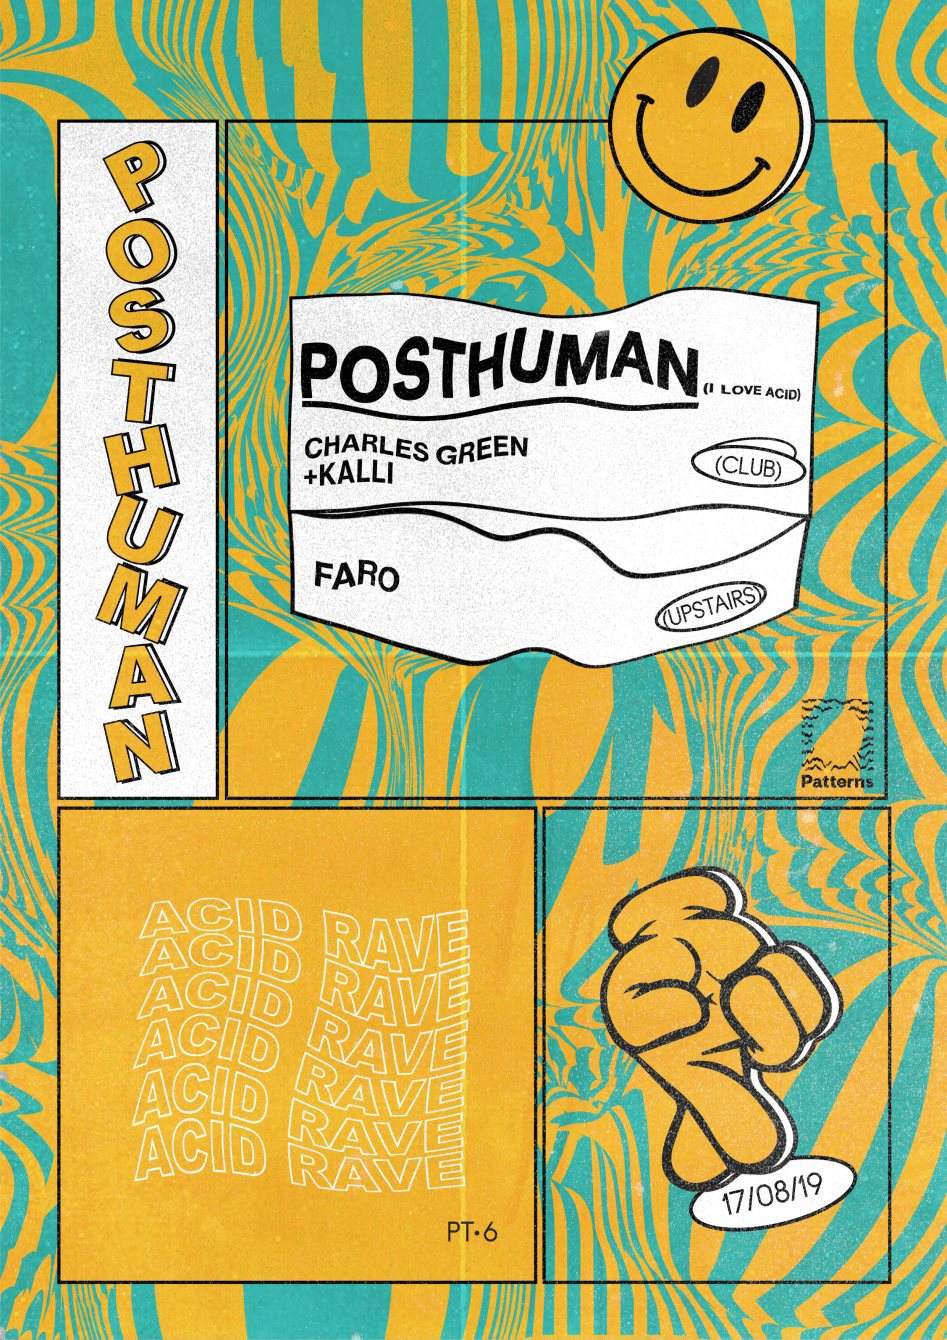 Acid Rave: Posthuman (I Love Acid) - Página frontal